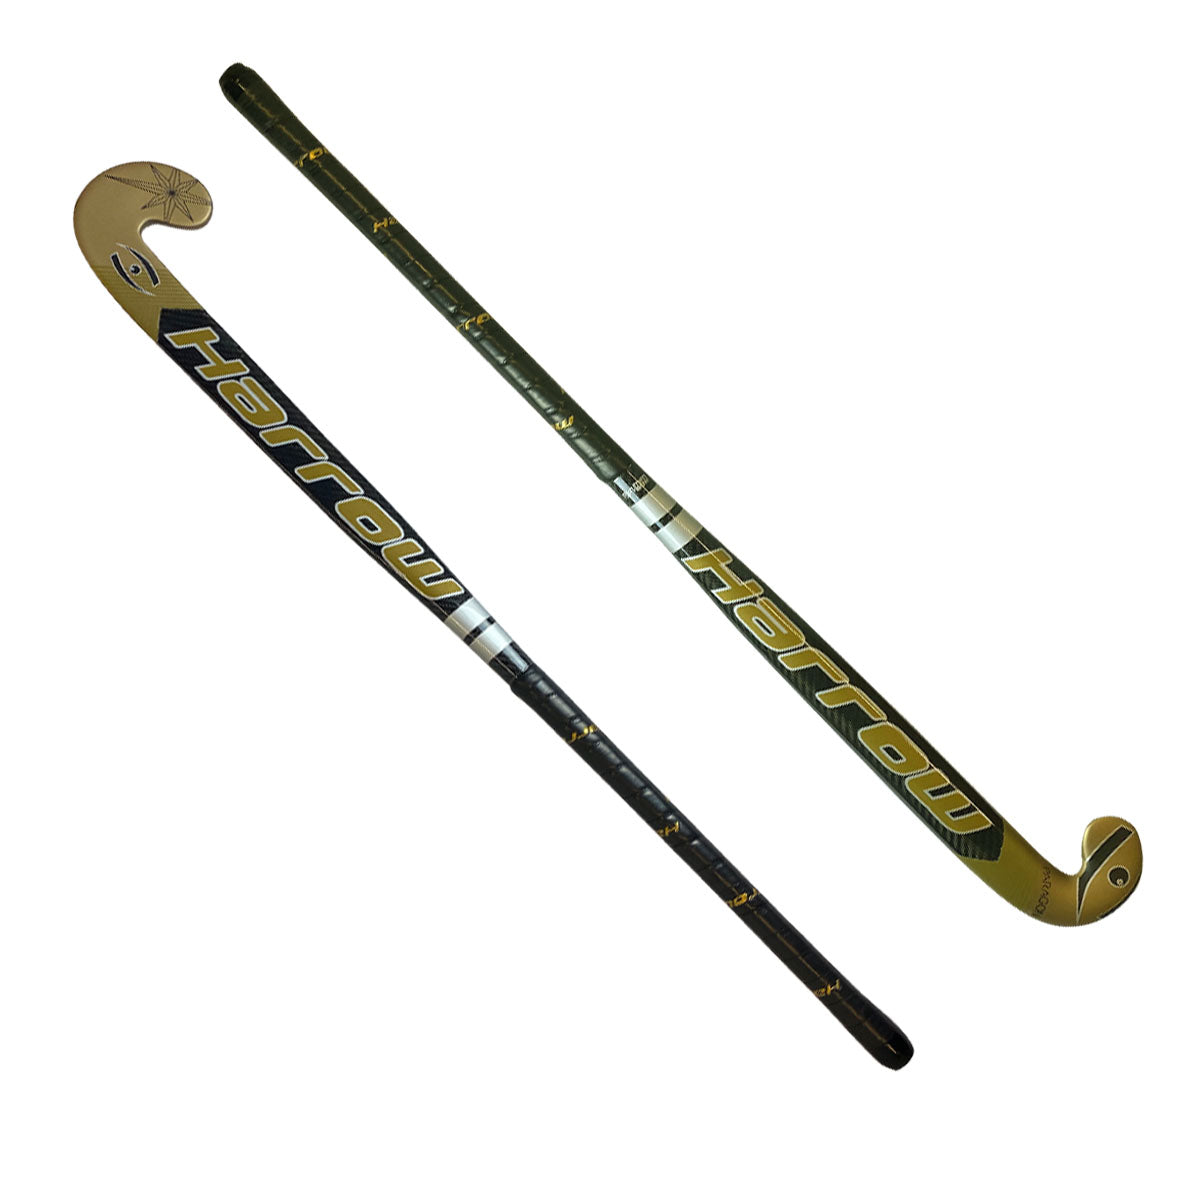 Paragon 45 Field Hockey Stick - Harrow Sports